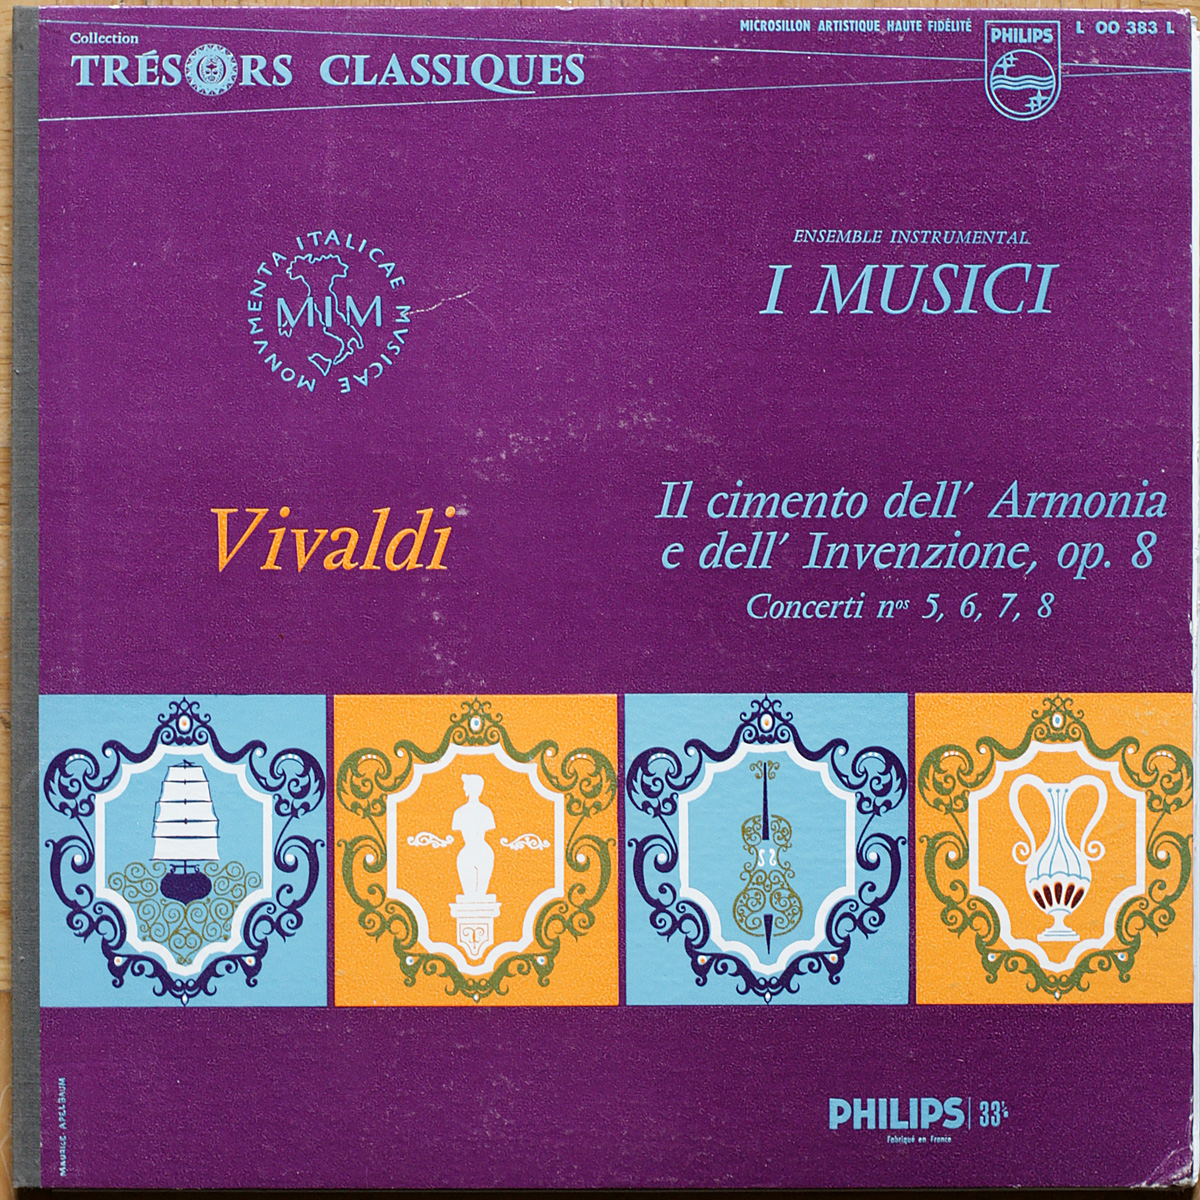 Vivaldi • Concertos pour violon n° 5-8 • Il cimento dell'armonia e dell'inventione • Philips L 00 383 L • Felix Ayo • Vittorio Negri • I Musici